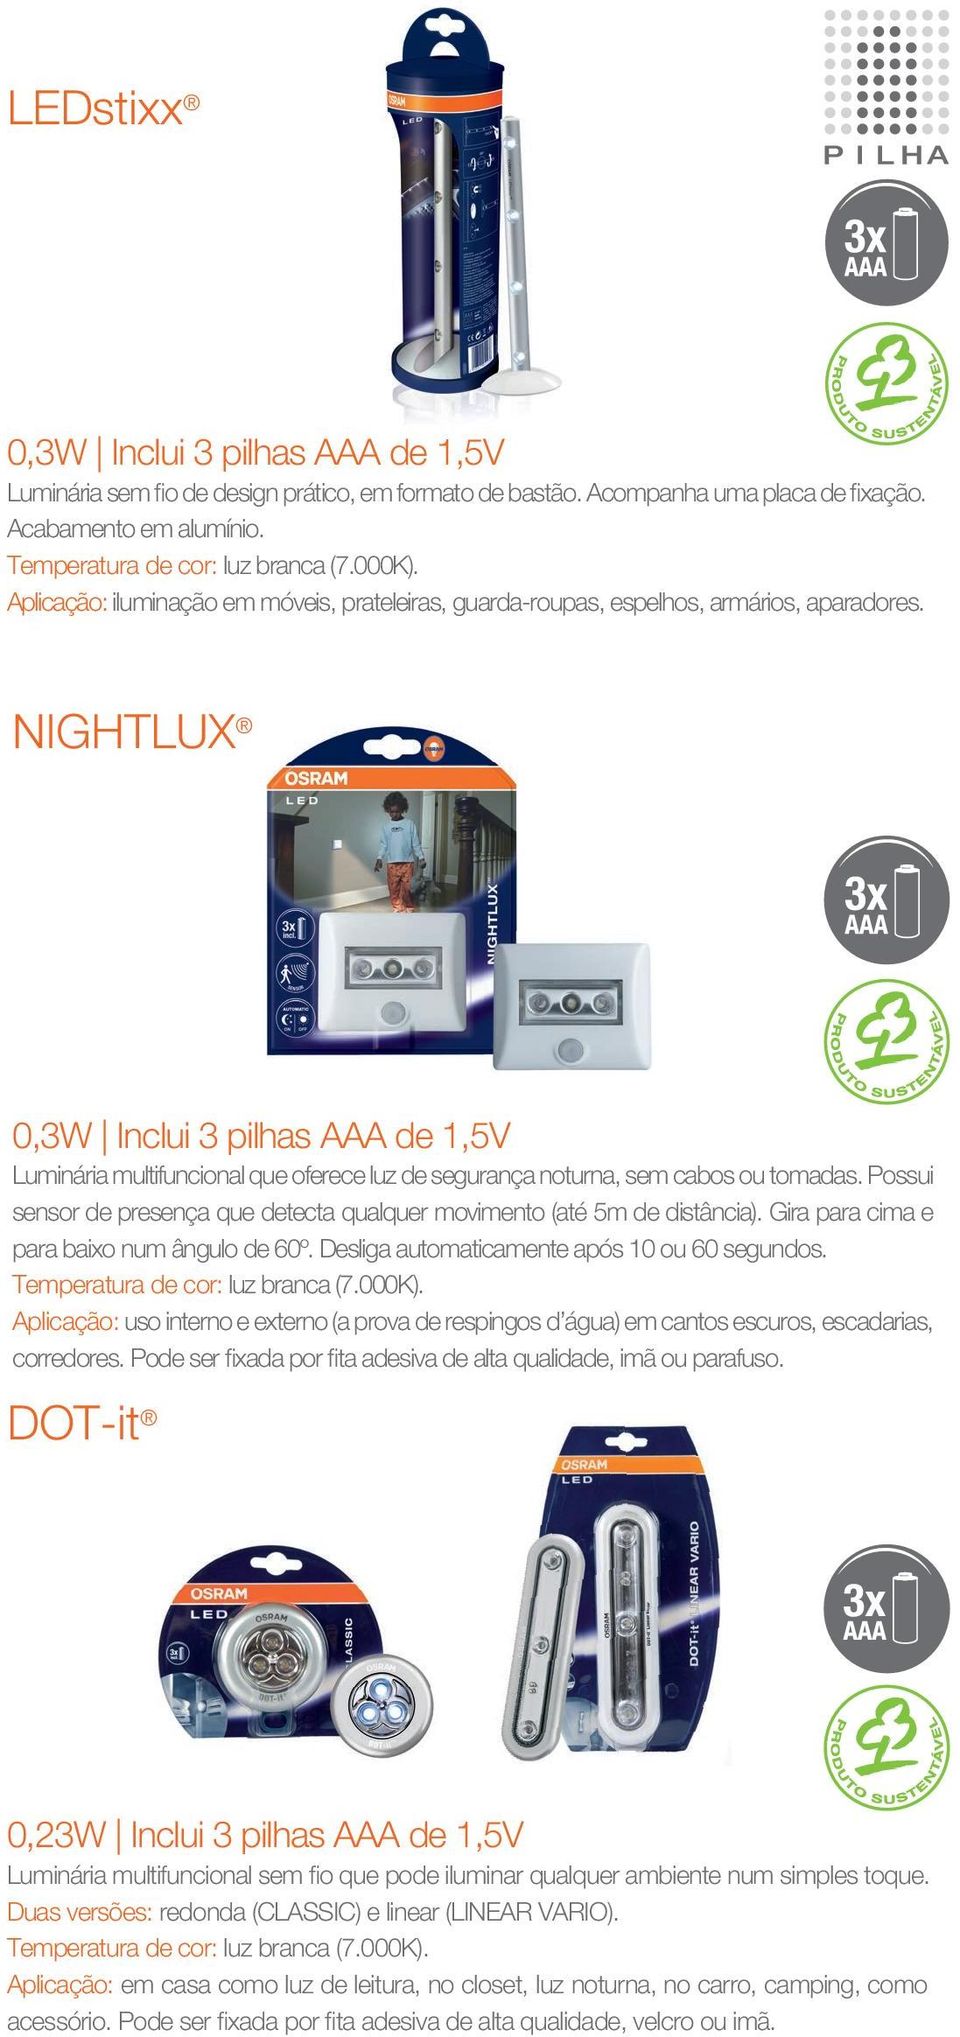 NIGHTLUX 0,3W Inclui 3 pilhas AAA de 1,5V Luminária multifuncional que oferece luz de segurança noturna, sem cabos ou tomadas.